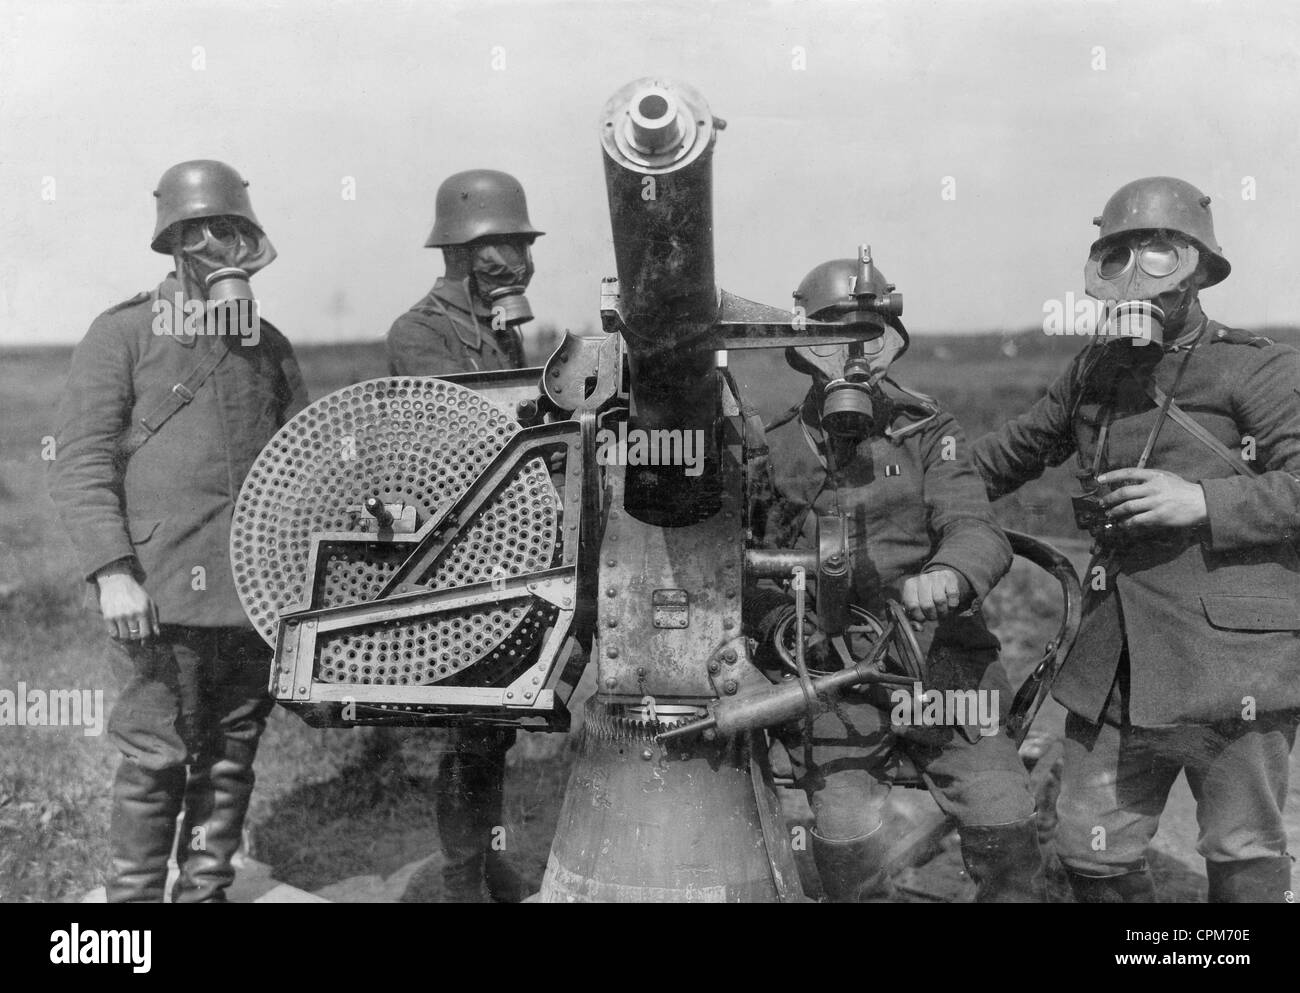 Les soldats allemands à un autocanon utilisés pour la défense aérienne de la PREMIÈRE GUERRE MONDIALE, 1918 Banque D'Images